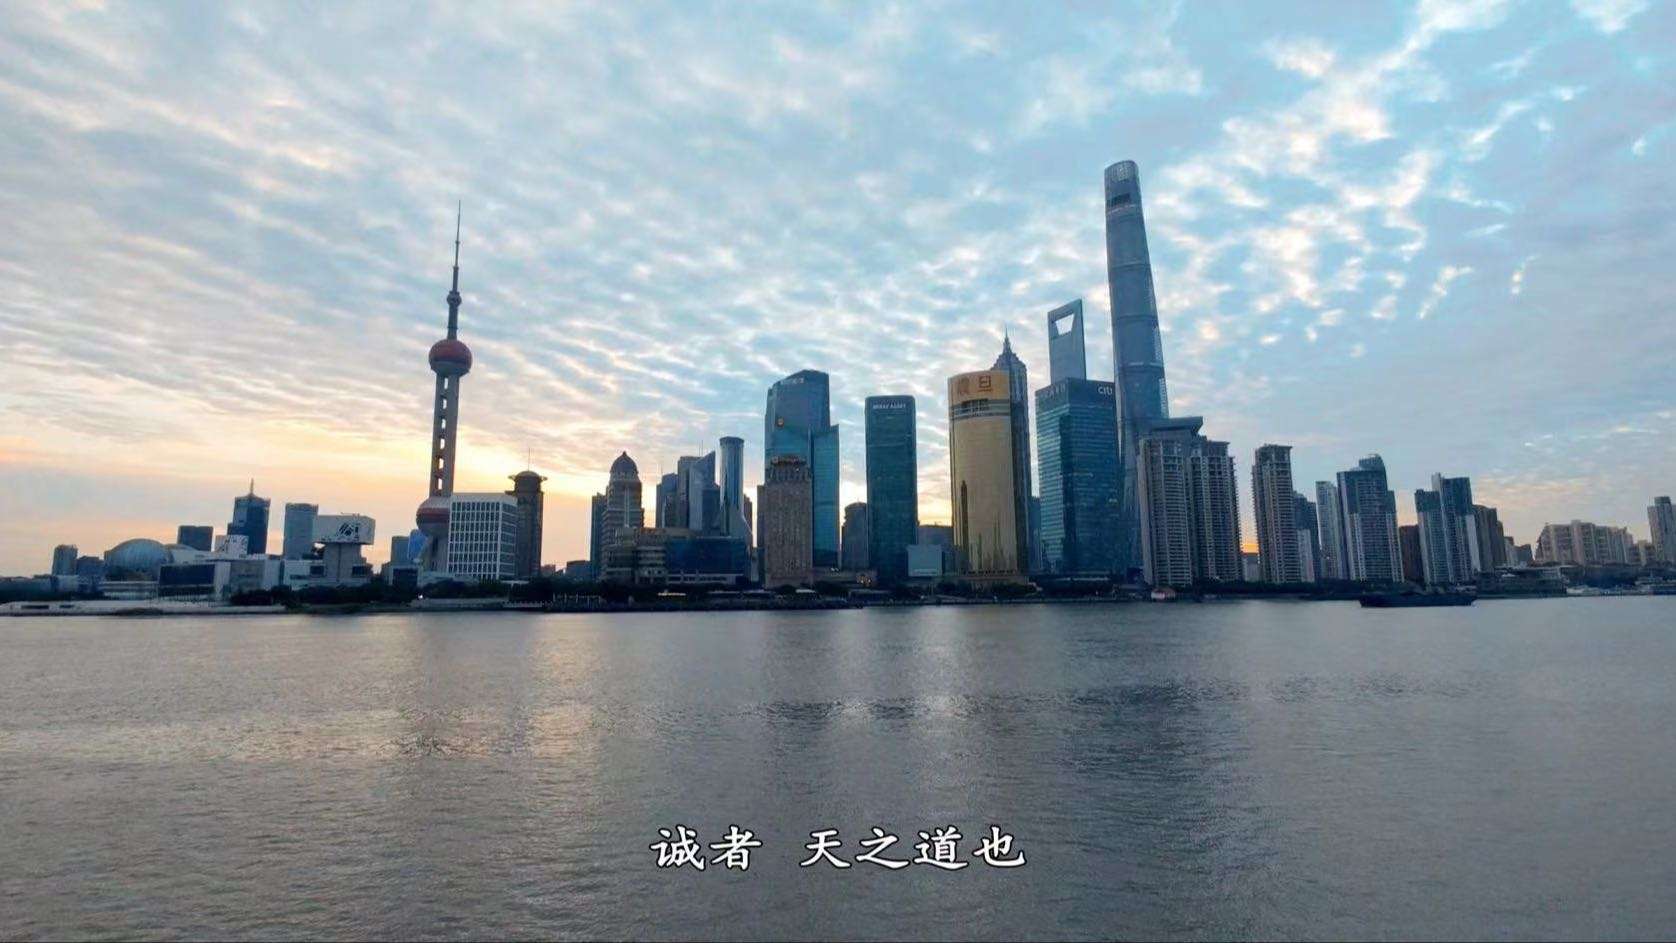 上海腾隆国际货运代理有限公司宣传片—— 4K